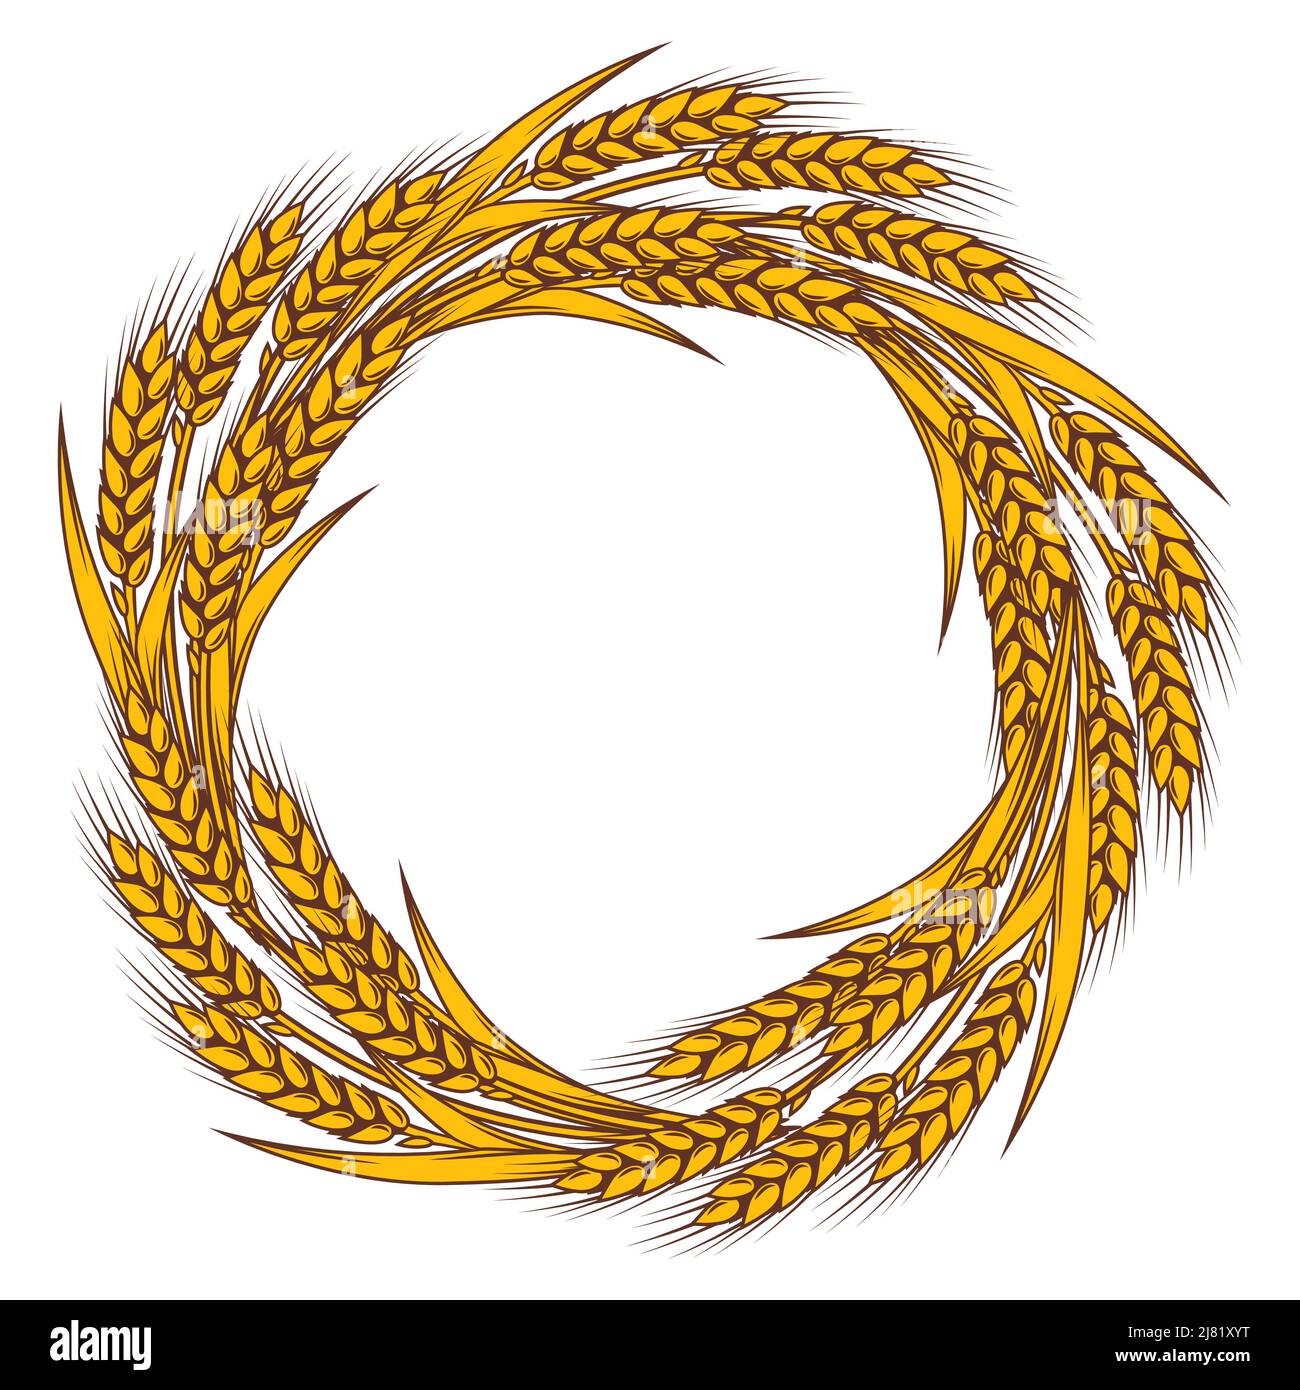 Châssis avec blé. Image agricole avec des oreilles dorées naturelles d'orge ou de seigle. Illustration de Vecteur